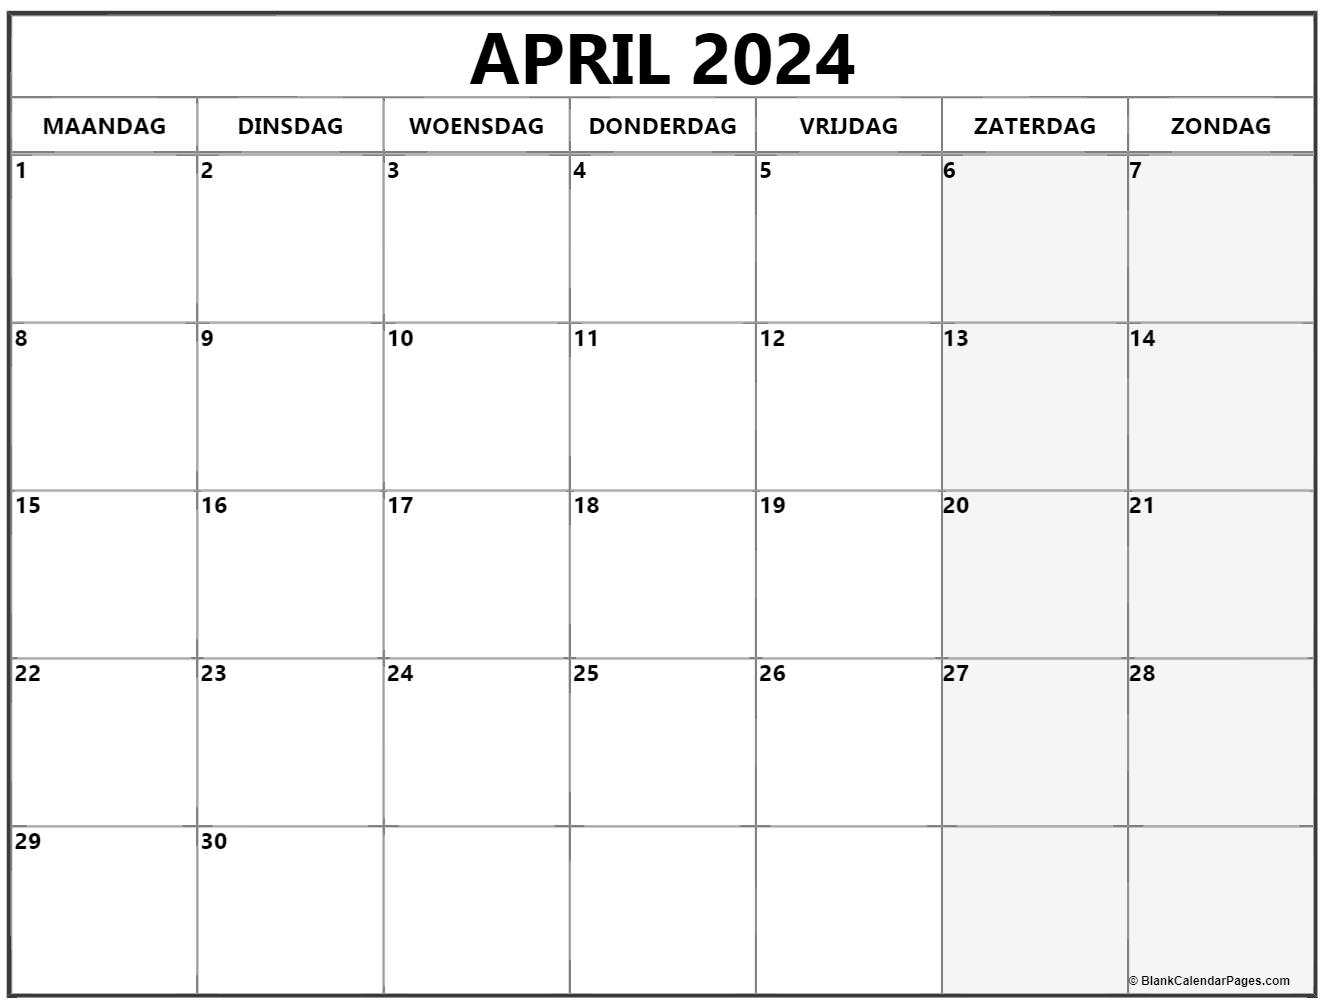 April 2024 Kalender Nederlandse | Kalender April regarding Calender April 2024